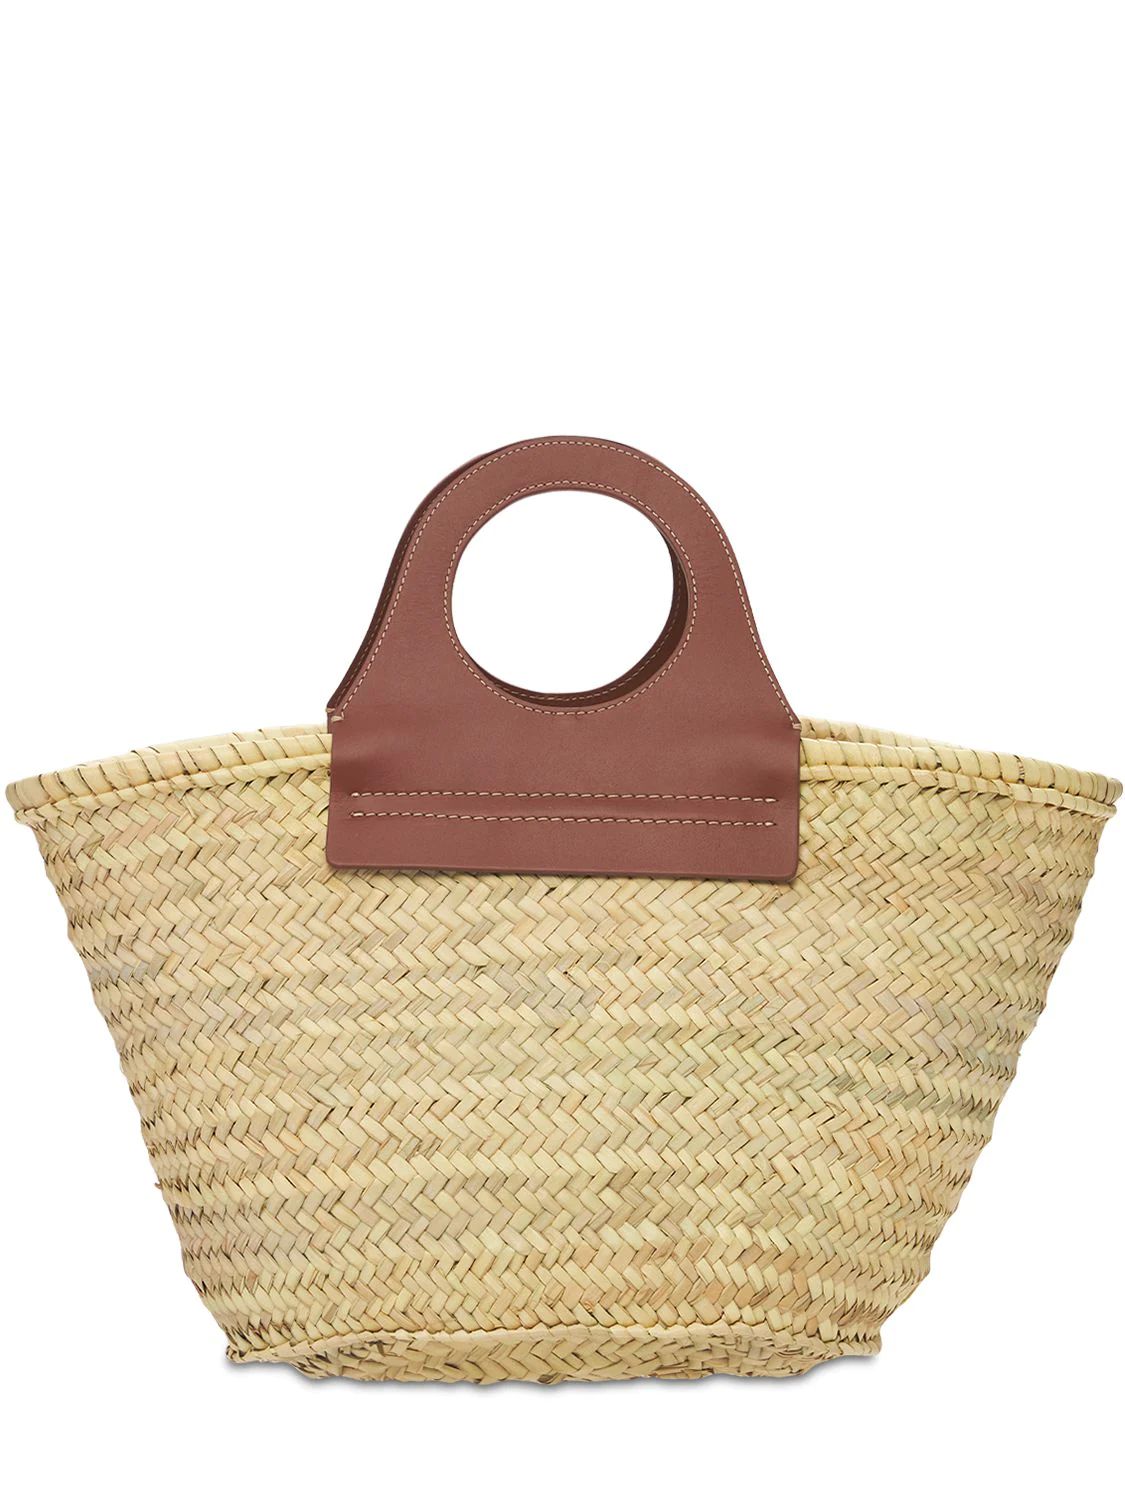 Hereu - Cabas handwoven straw basket bag - Chestnut | Luisaviaroma | Luisaviaroma